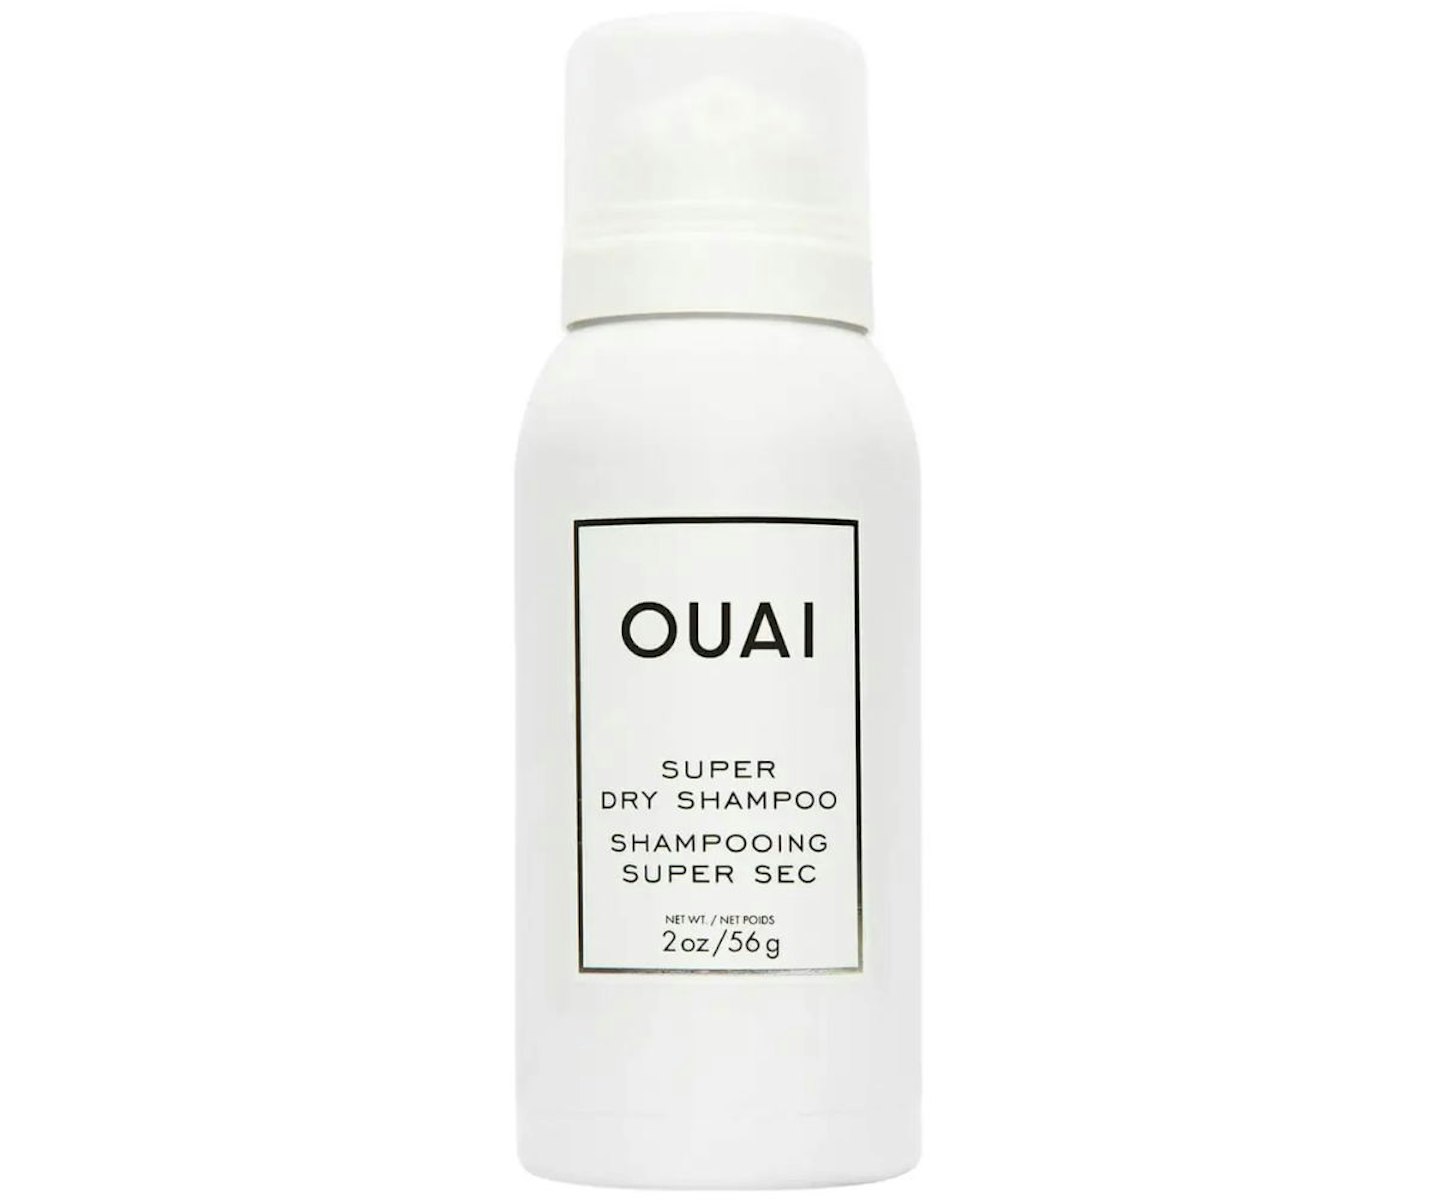 OUAI Super Dry Shampoo Mini 